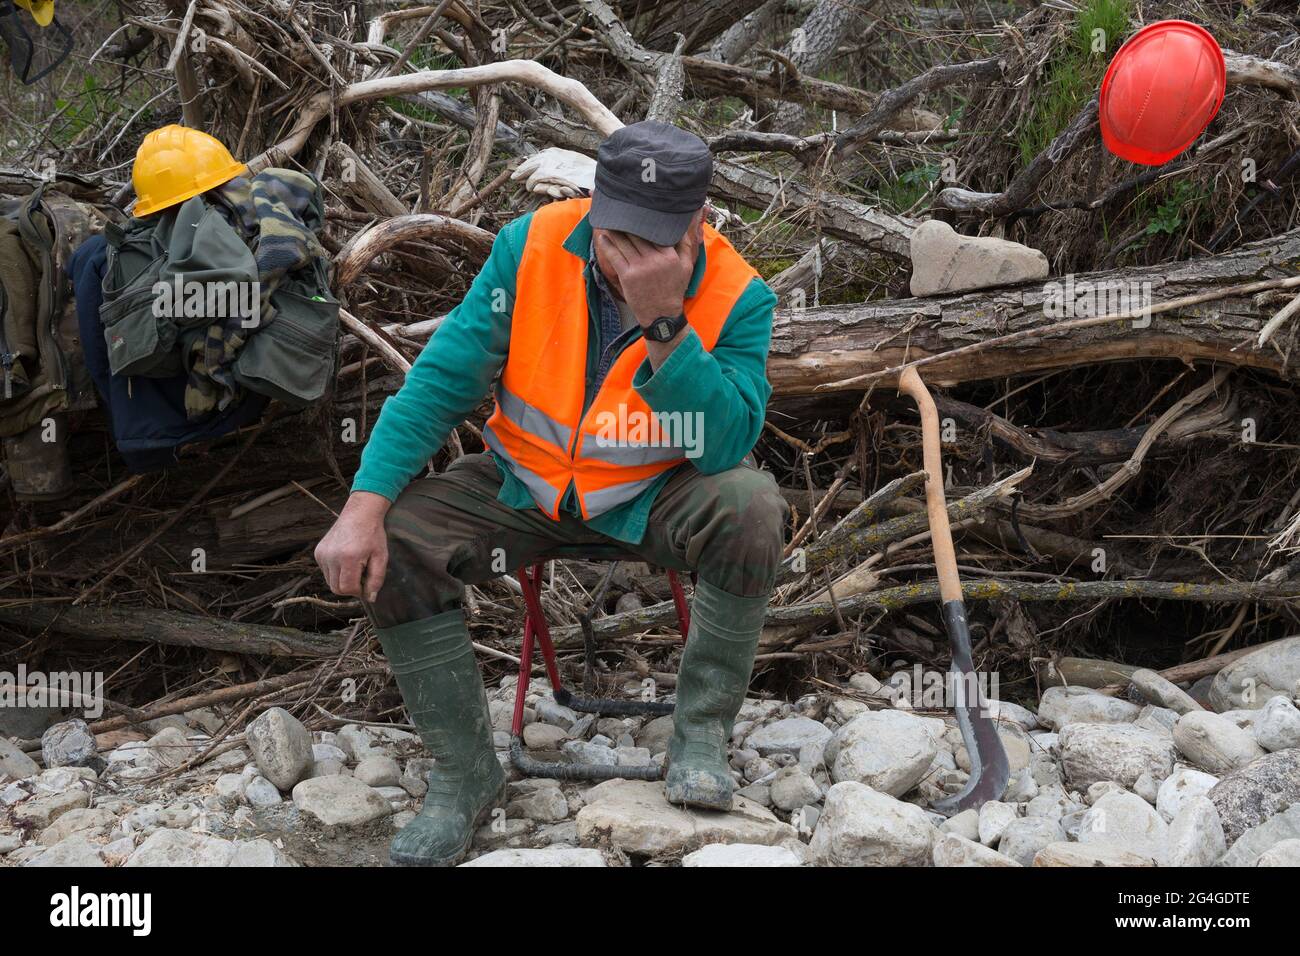 Standort Fiume Verrino (IS), Molise Region, Italien: Ein Waldarbeiter, der eine Pause macht, während er Bäume entlang des Verrino-Flusses schneidet. Stockfoto